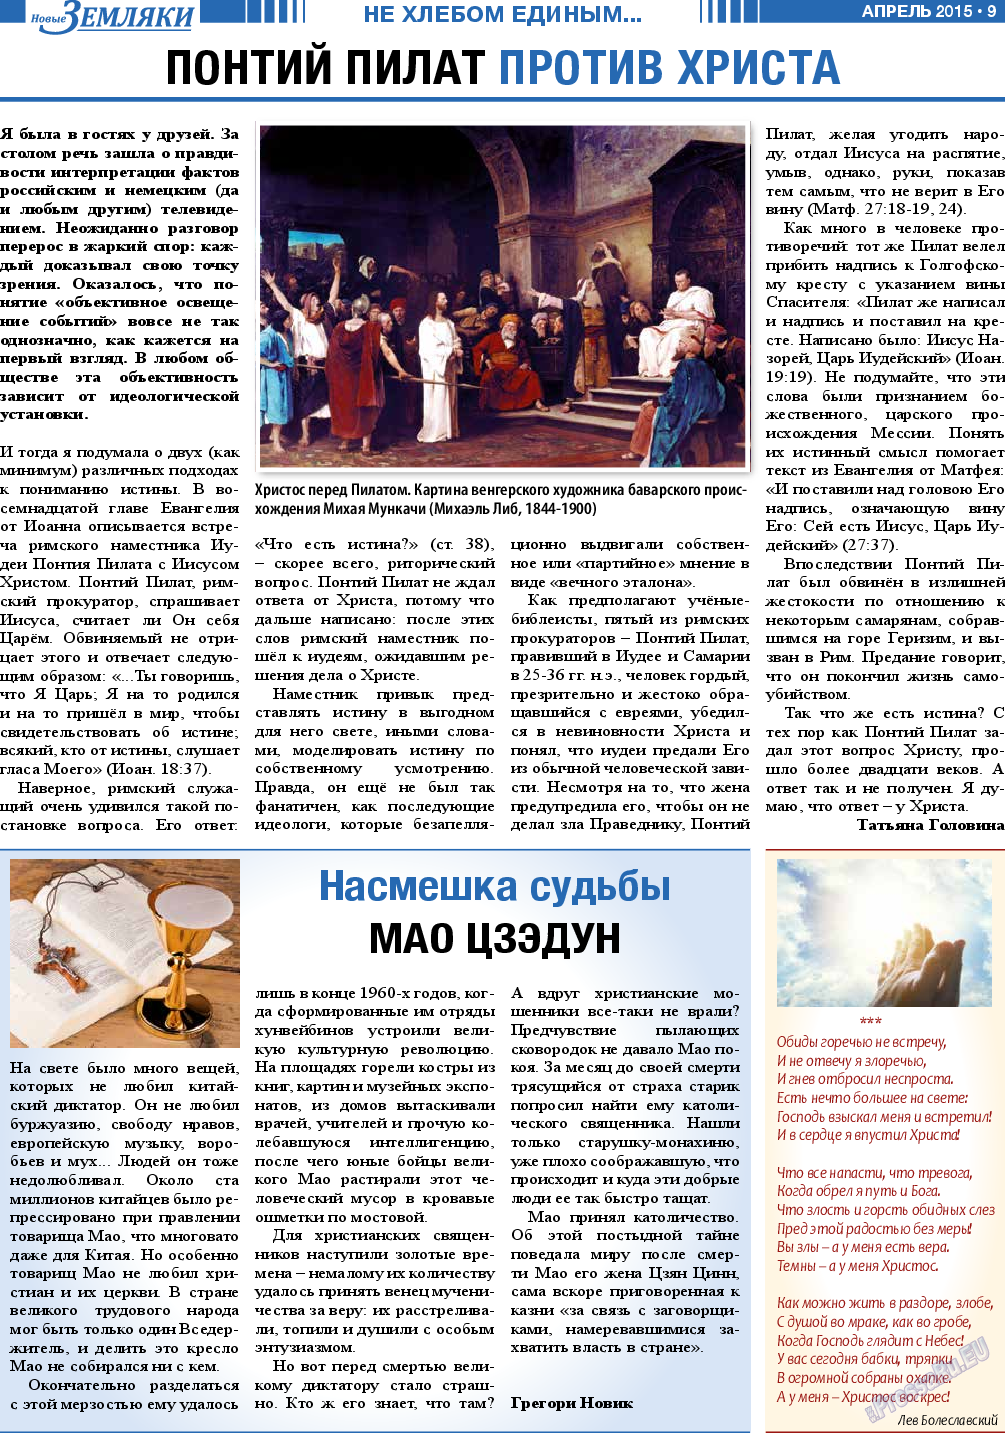 Новые Земляки, газета. 2015 №4 стр.9